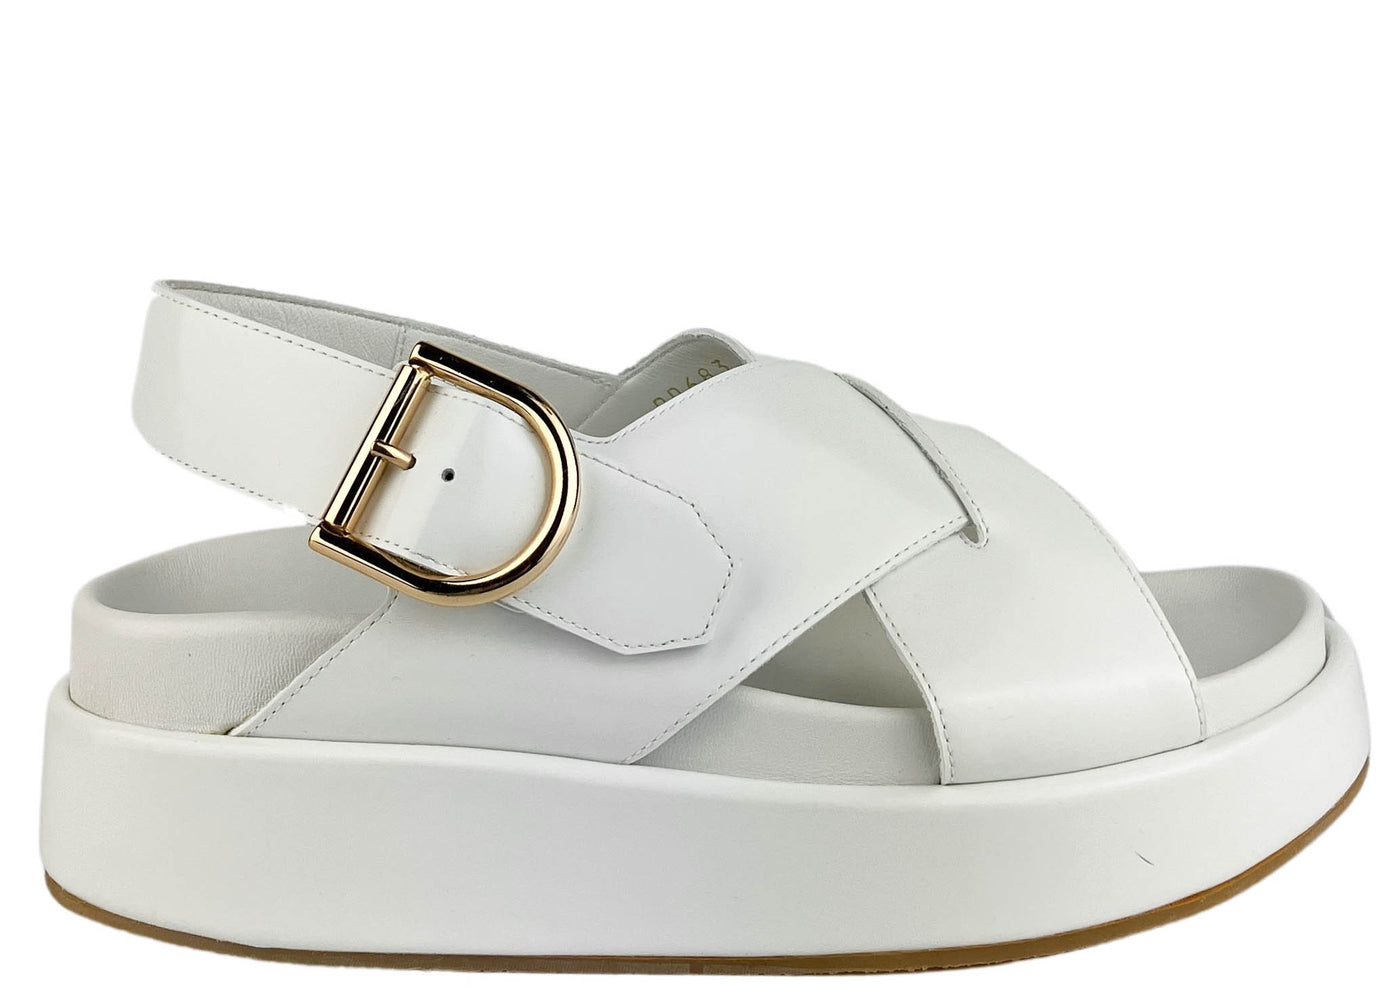 Dries Van Noten Platform Leather Sandals in White - Discounts on Dries Van Noten at UAL